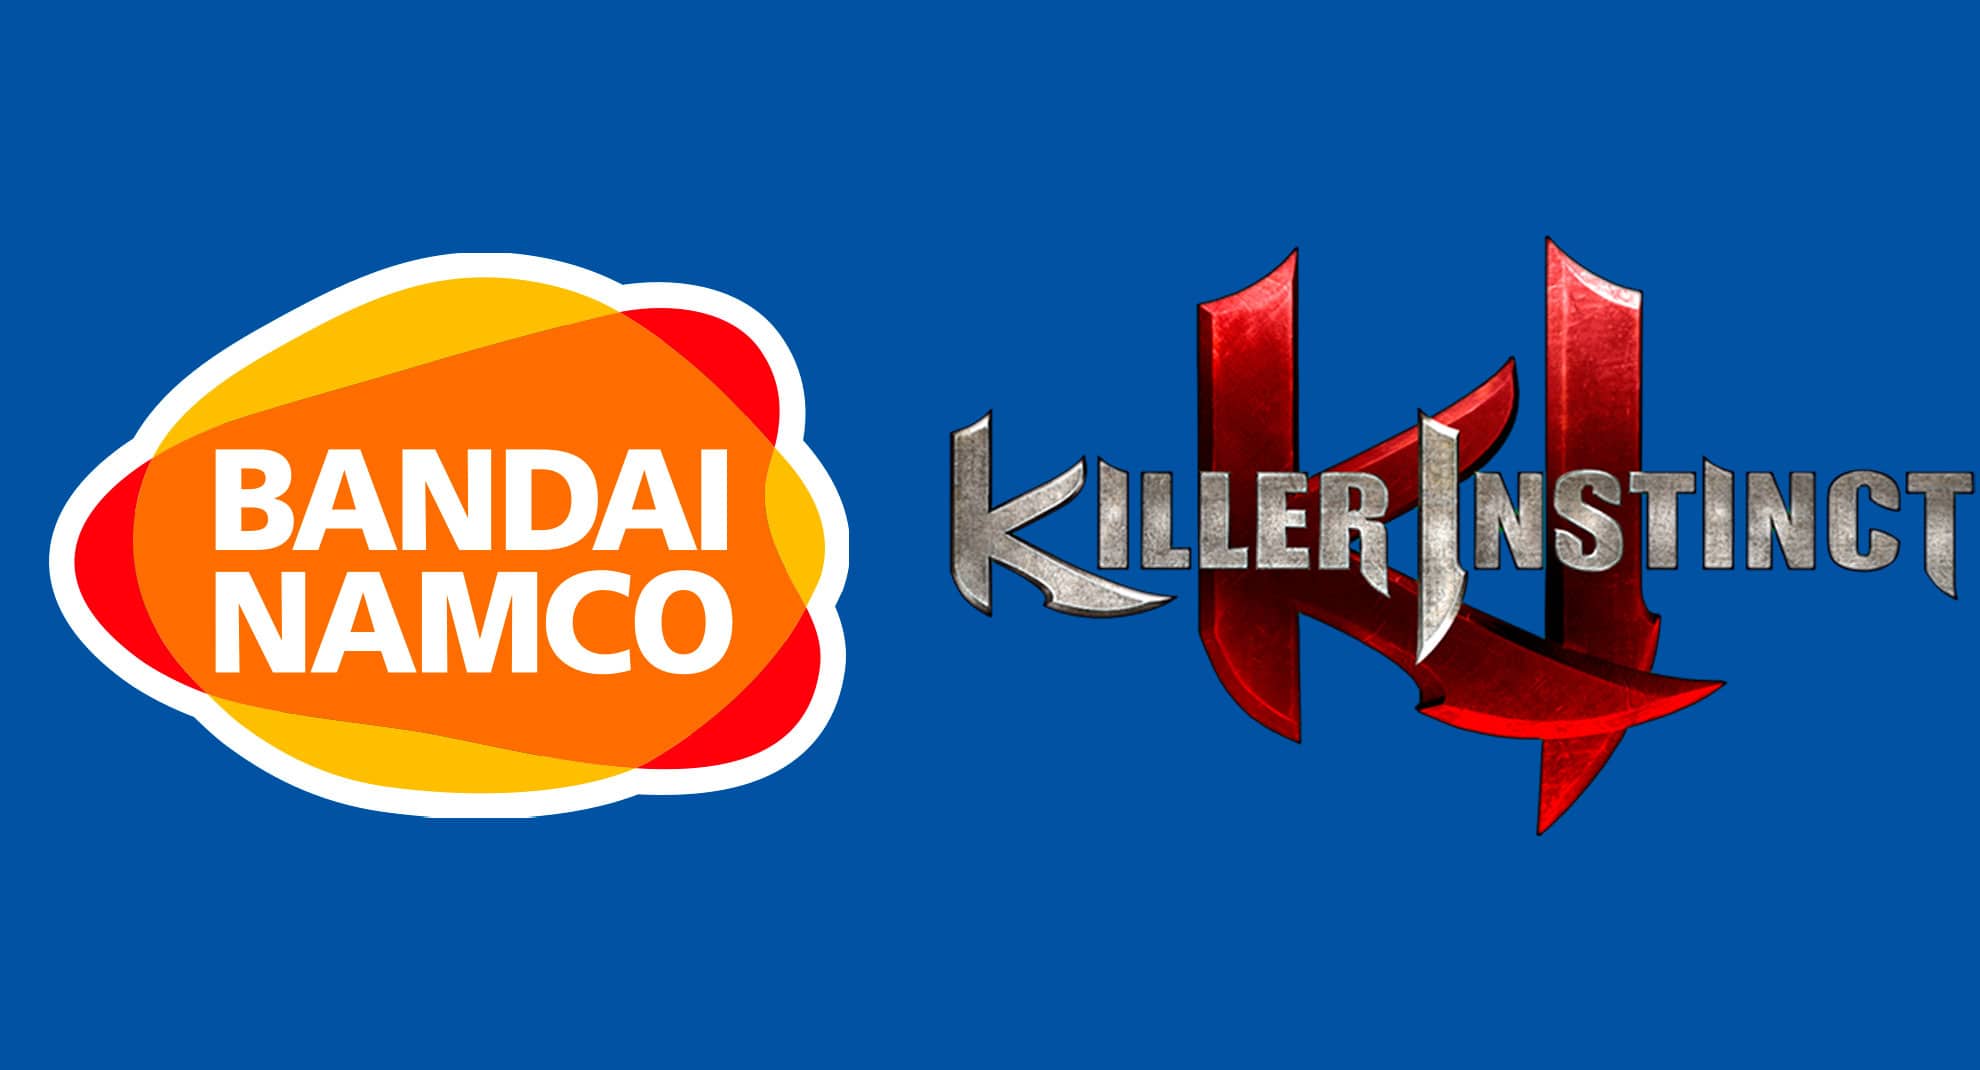 Bandai Namco podría estar trabajando en un reboot de Killer Instinct, según rumor